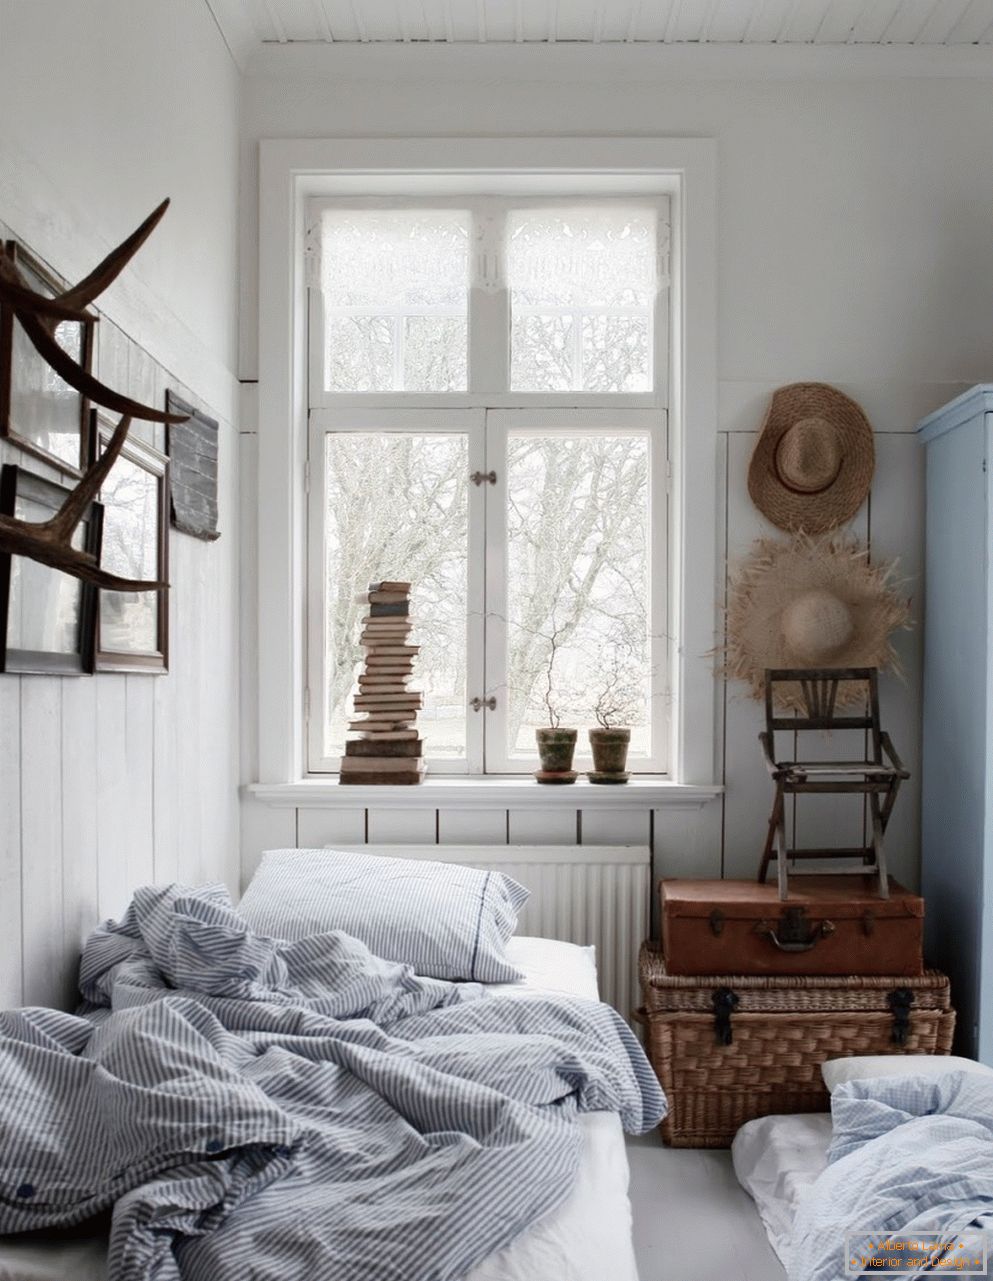 Skandynawski styl we wnętrzu sypialni, jej cechy i cechy